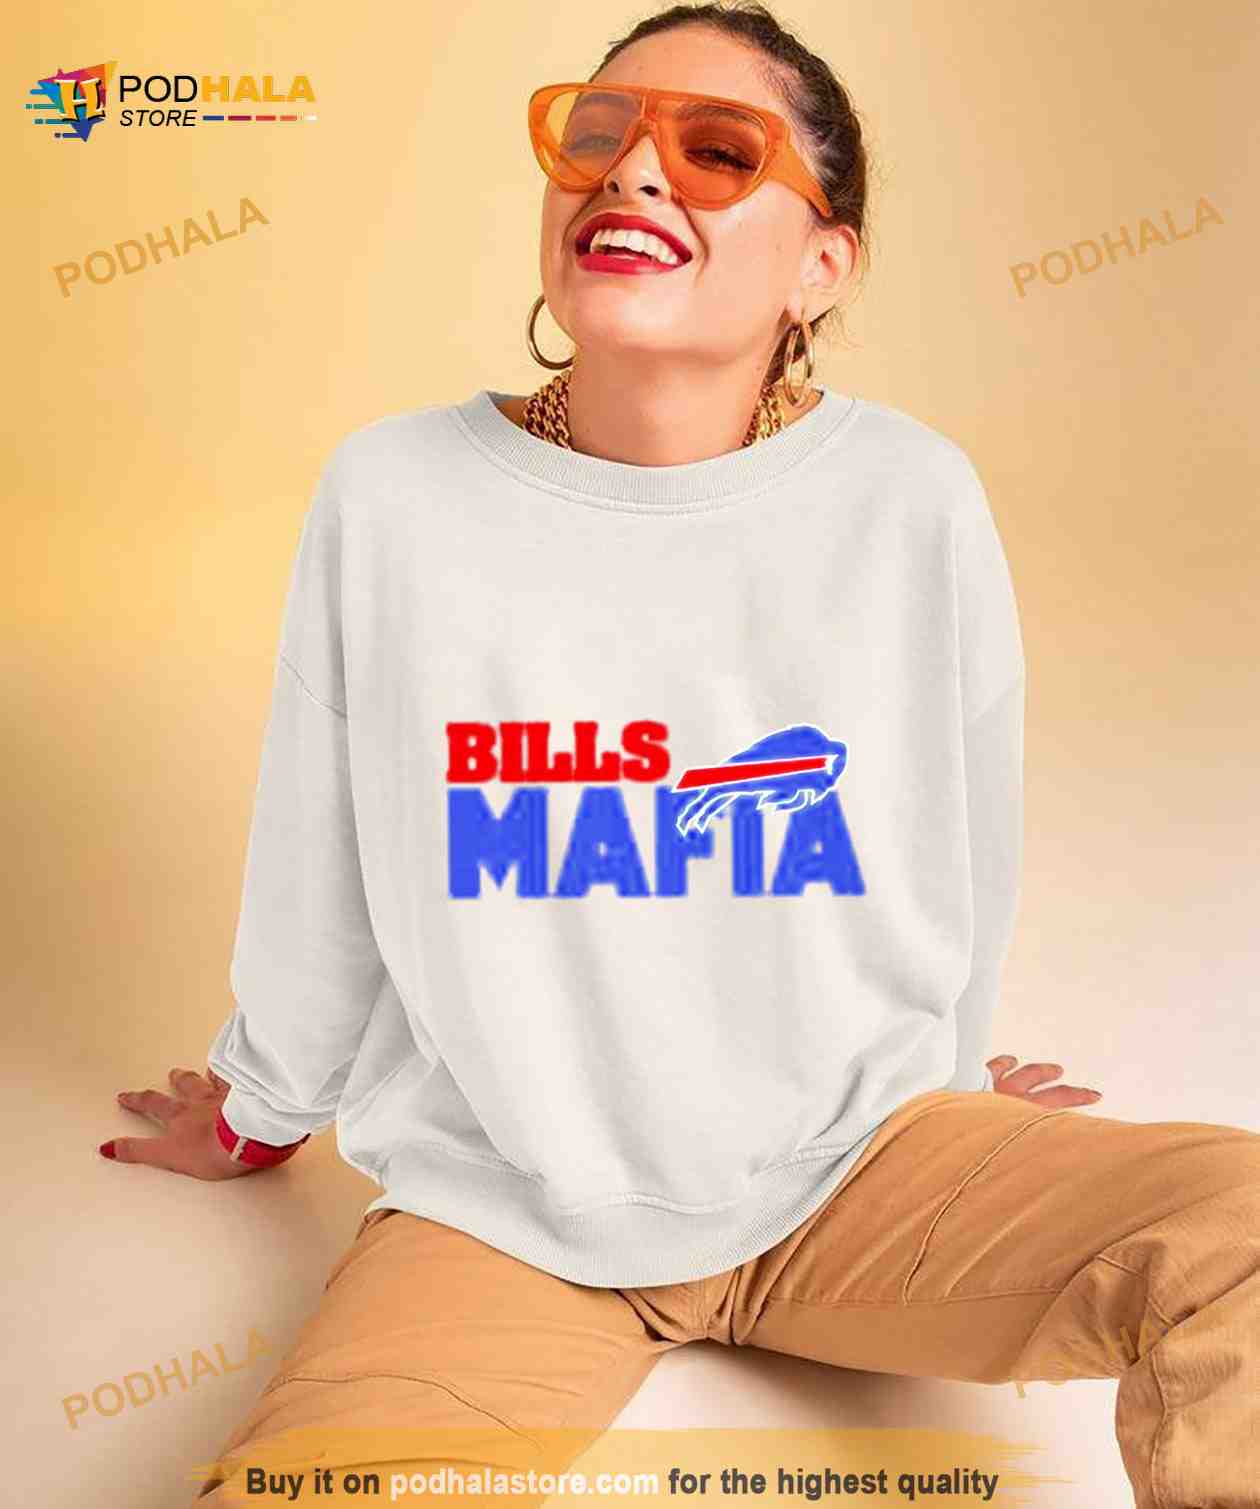 buffalo bills shirts cheap